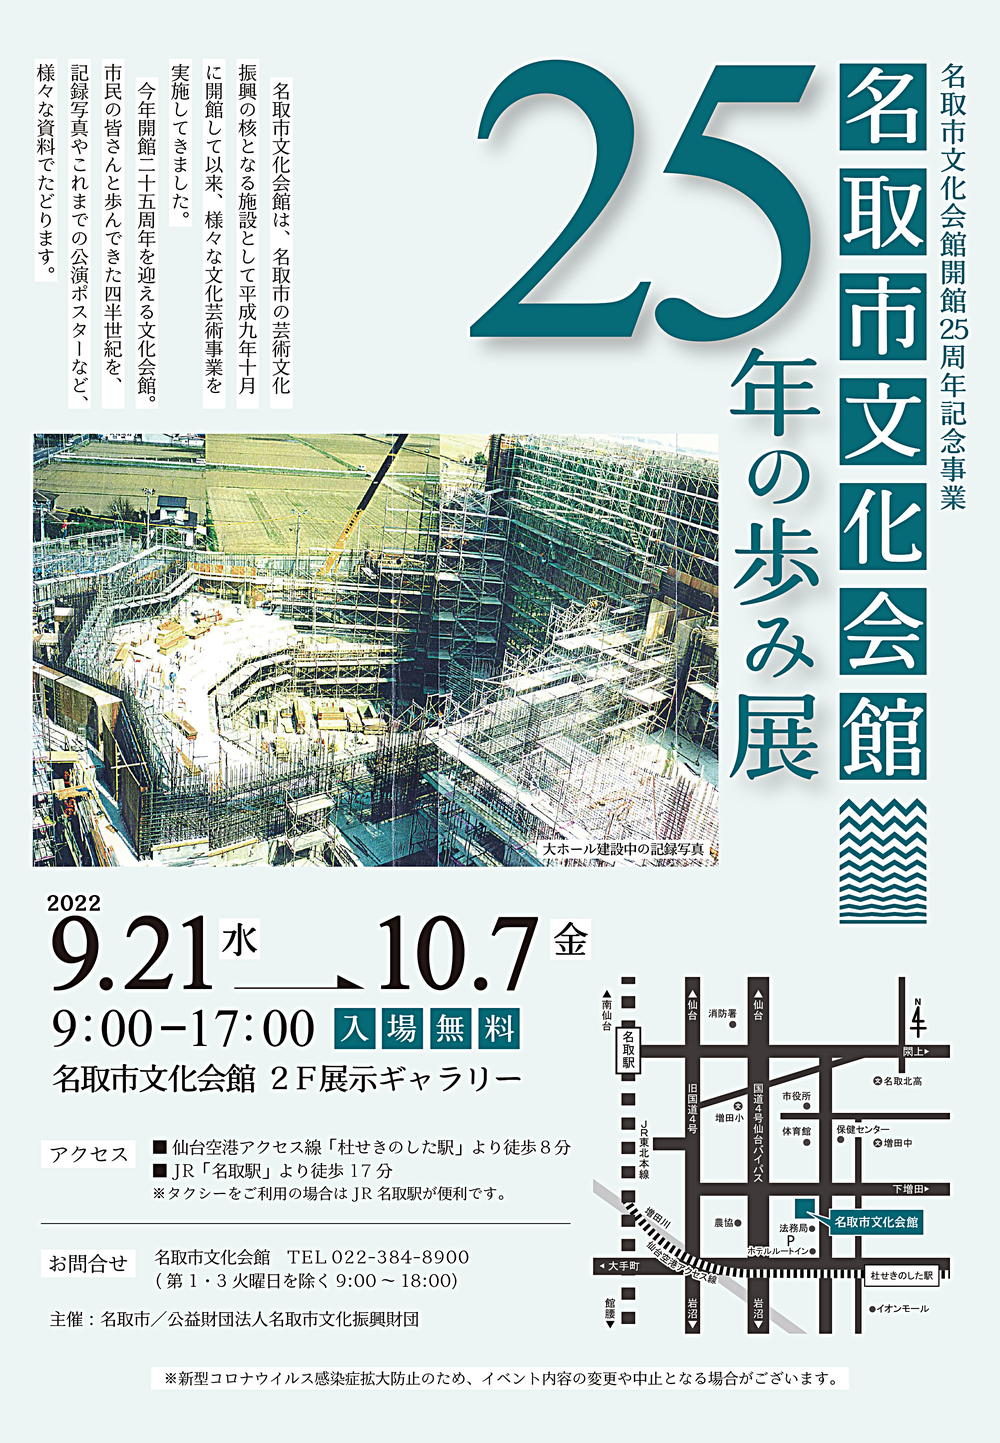 名取市文化会館開館25周年記念事業「名取市文化会館25年の歩み展」